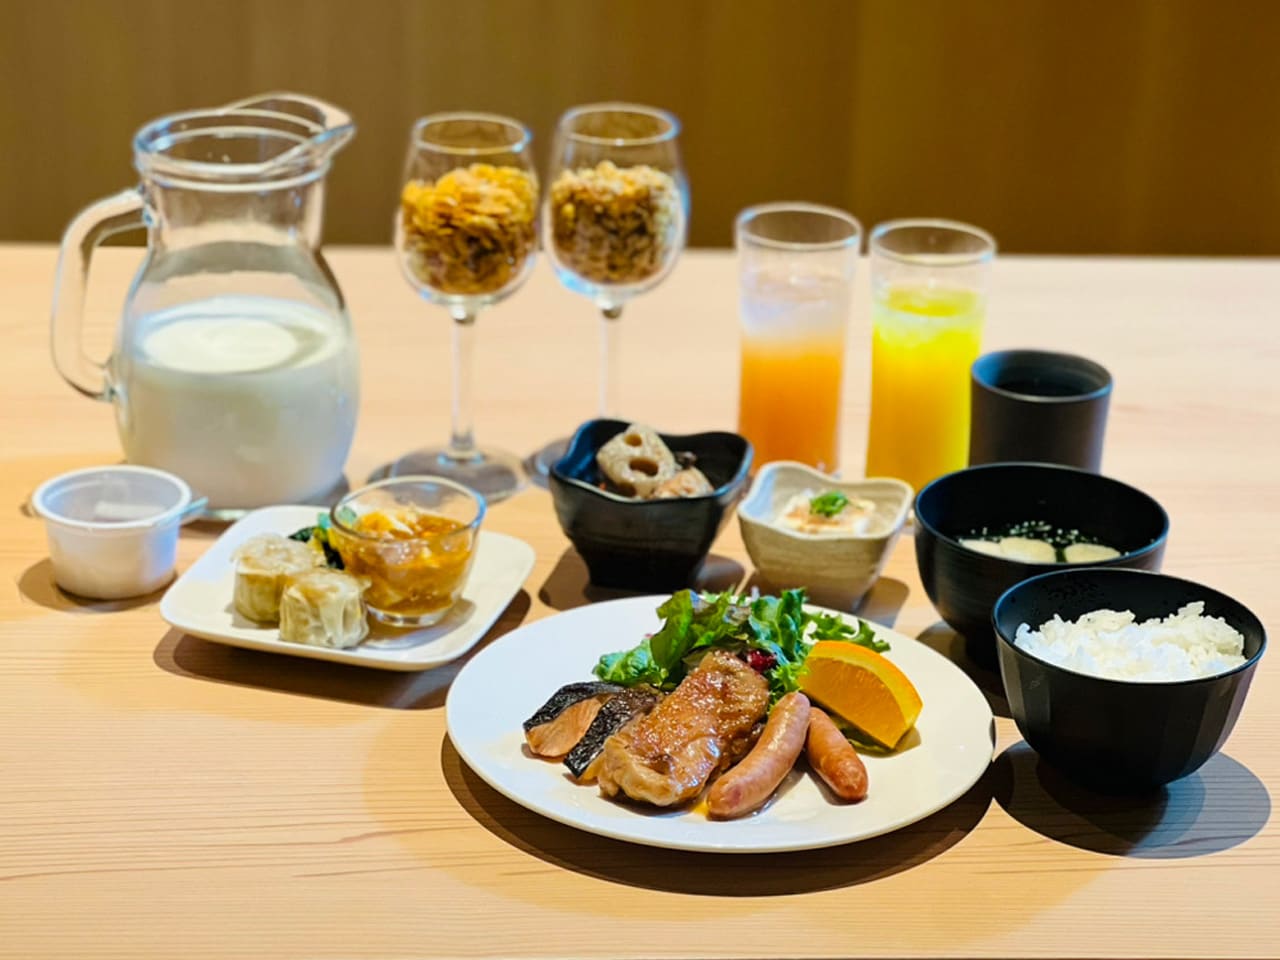 ตัวอย่างการจัดอาหารเช้า (ภาษาญี่ปุ่น)